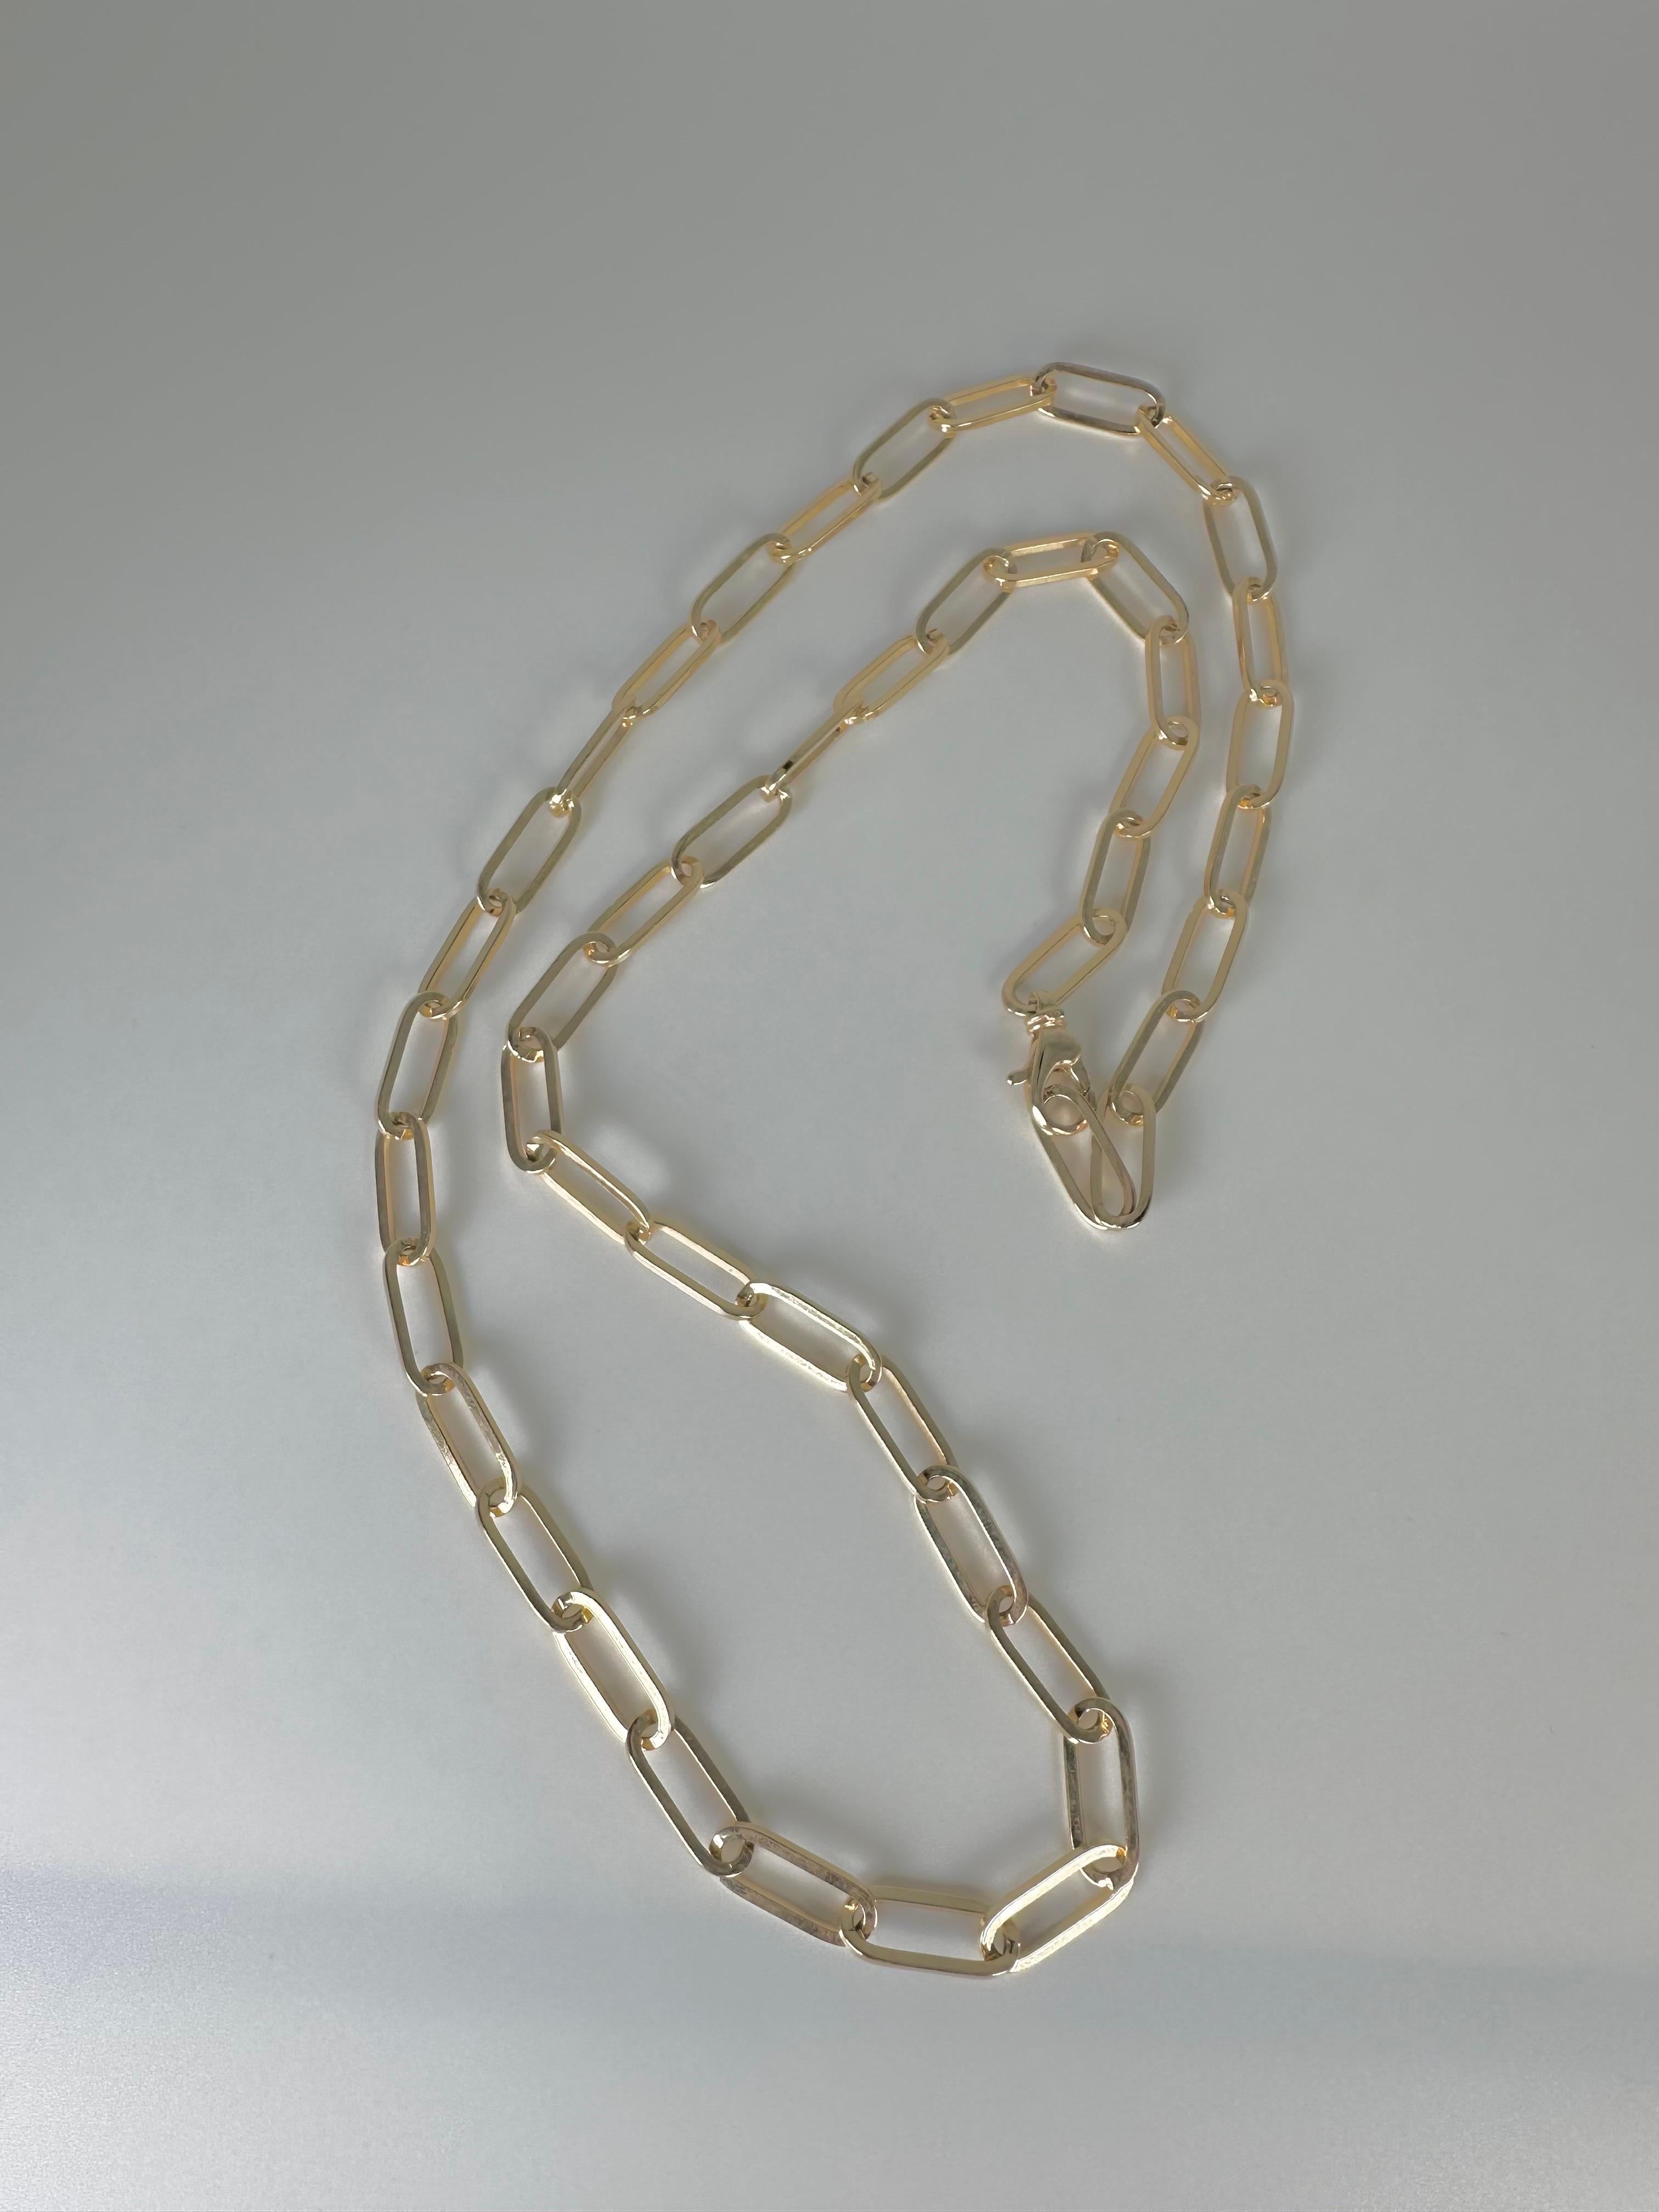 Unglaubliche Büroklammer-Halskette aus massivem Gold, jede Klammer wird bis zur Perfektion poliert und dann zusammengesetzt. Diese Halskette sieht sowohl allein als auch in Kombination mit anderen Anhängern unglaublich gut aus. Bei einer Länge von